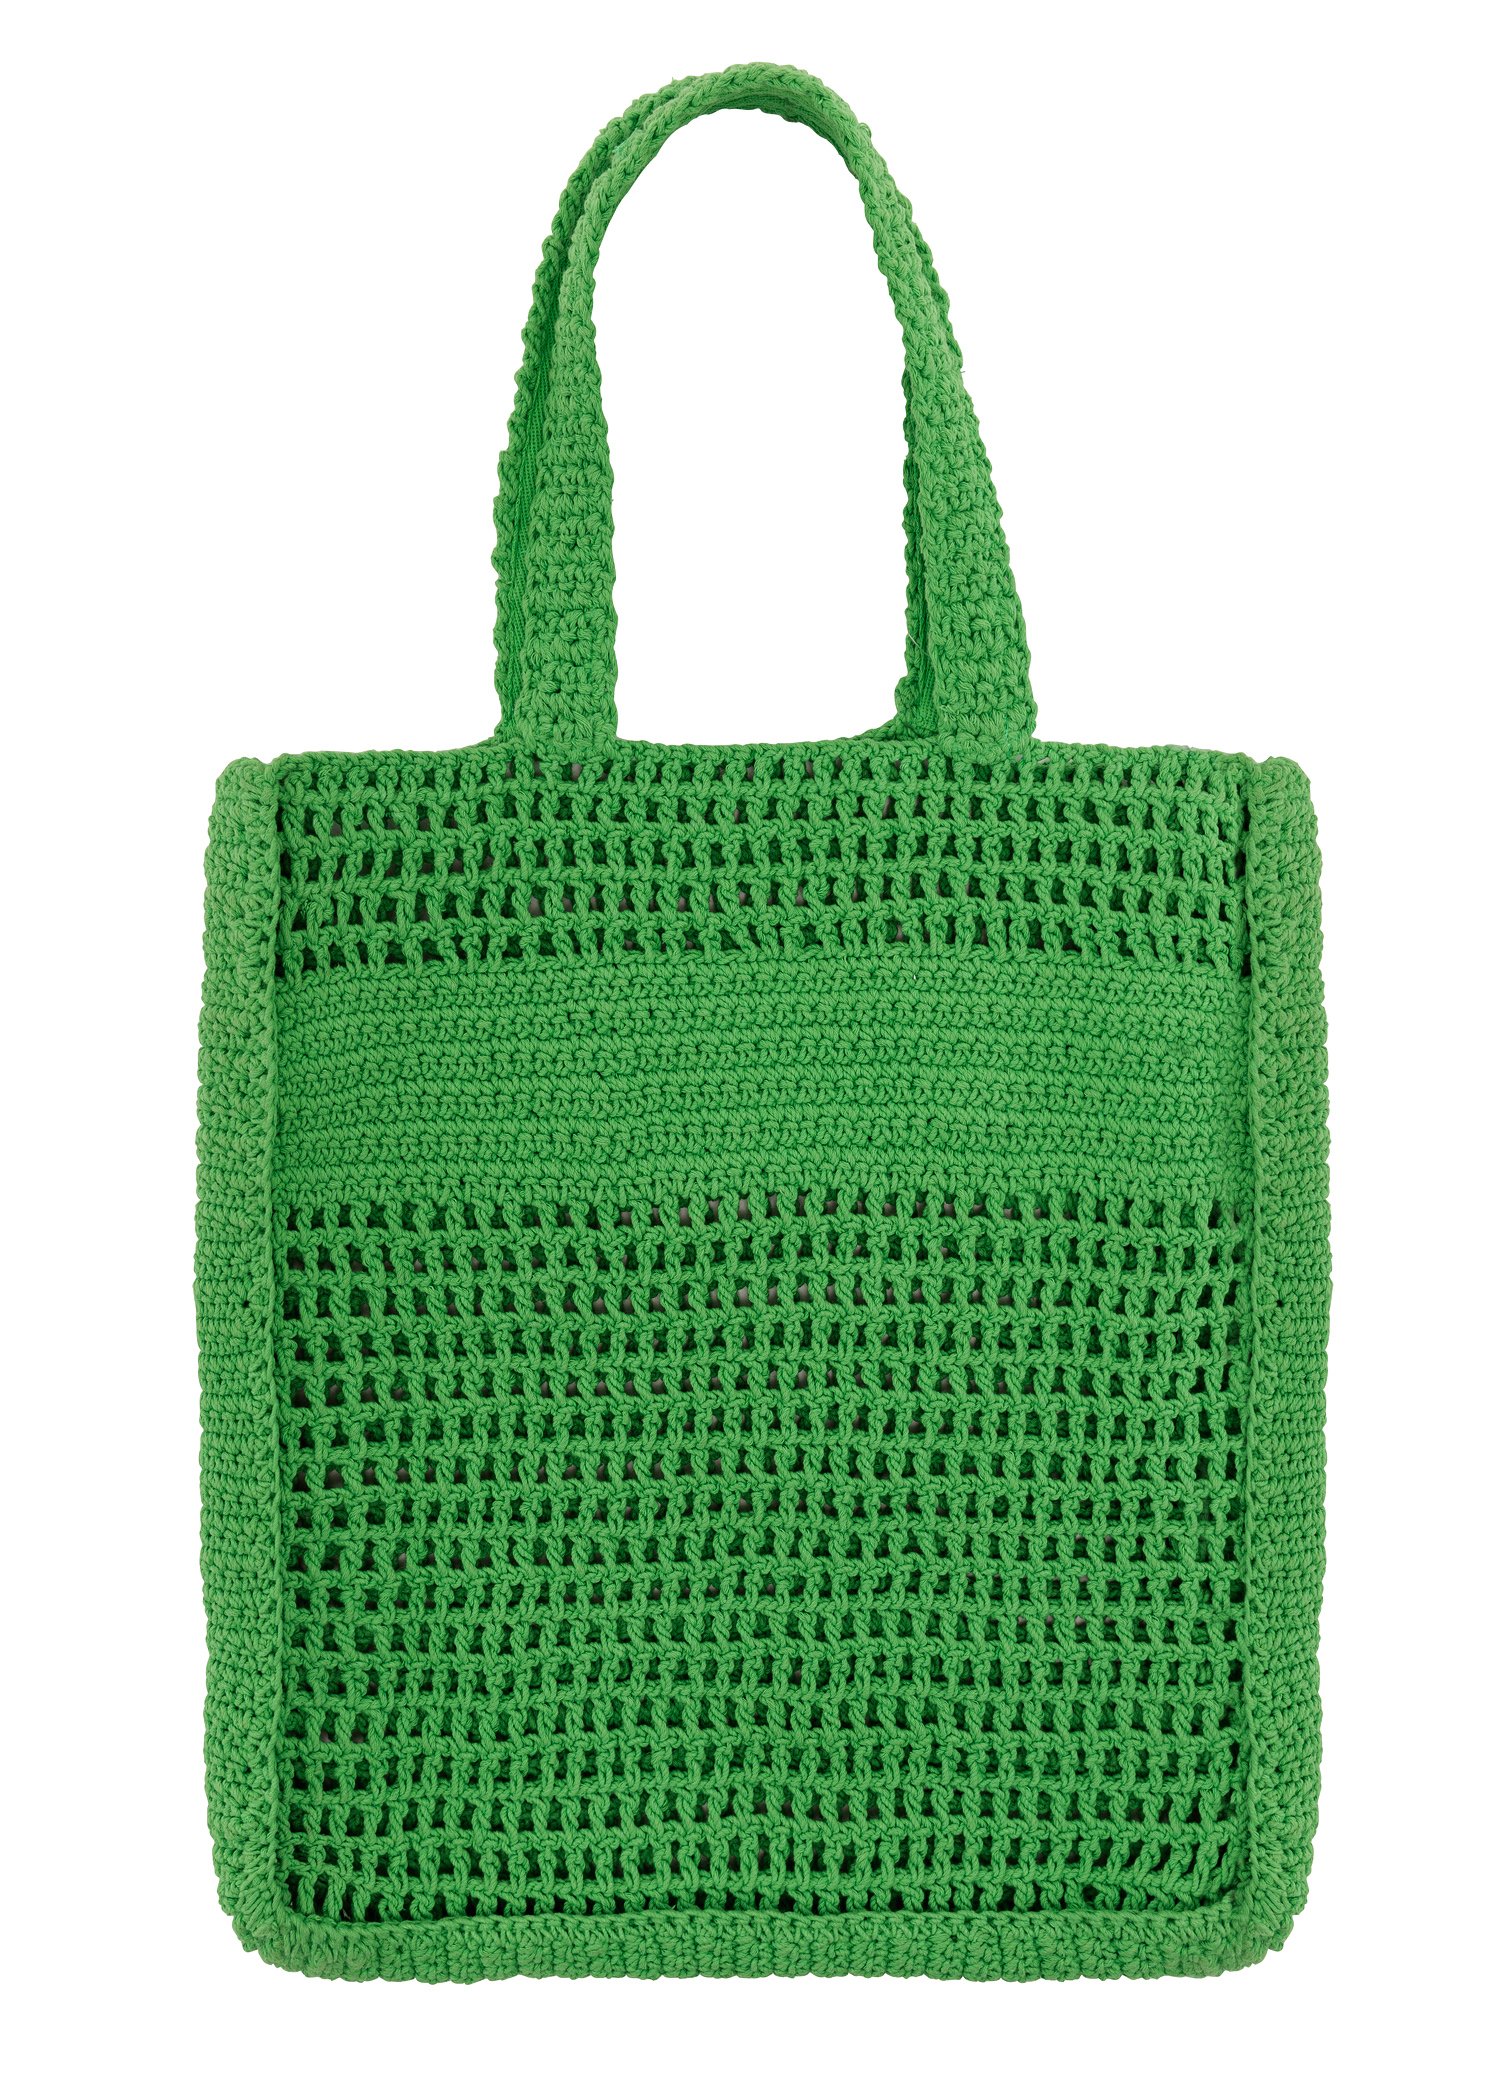 Hand knitted crochet bag